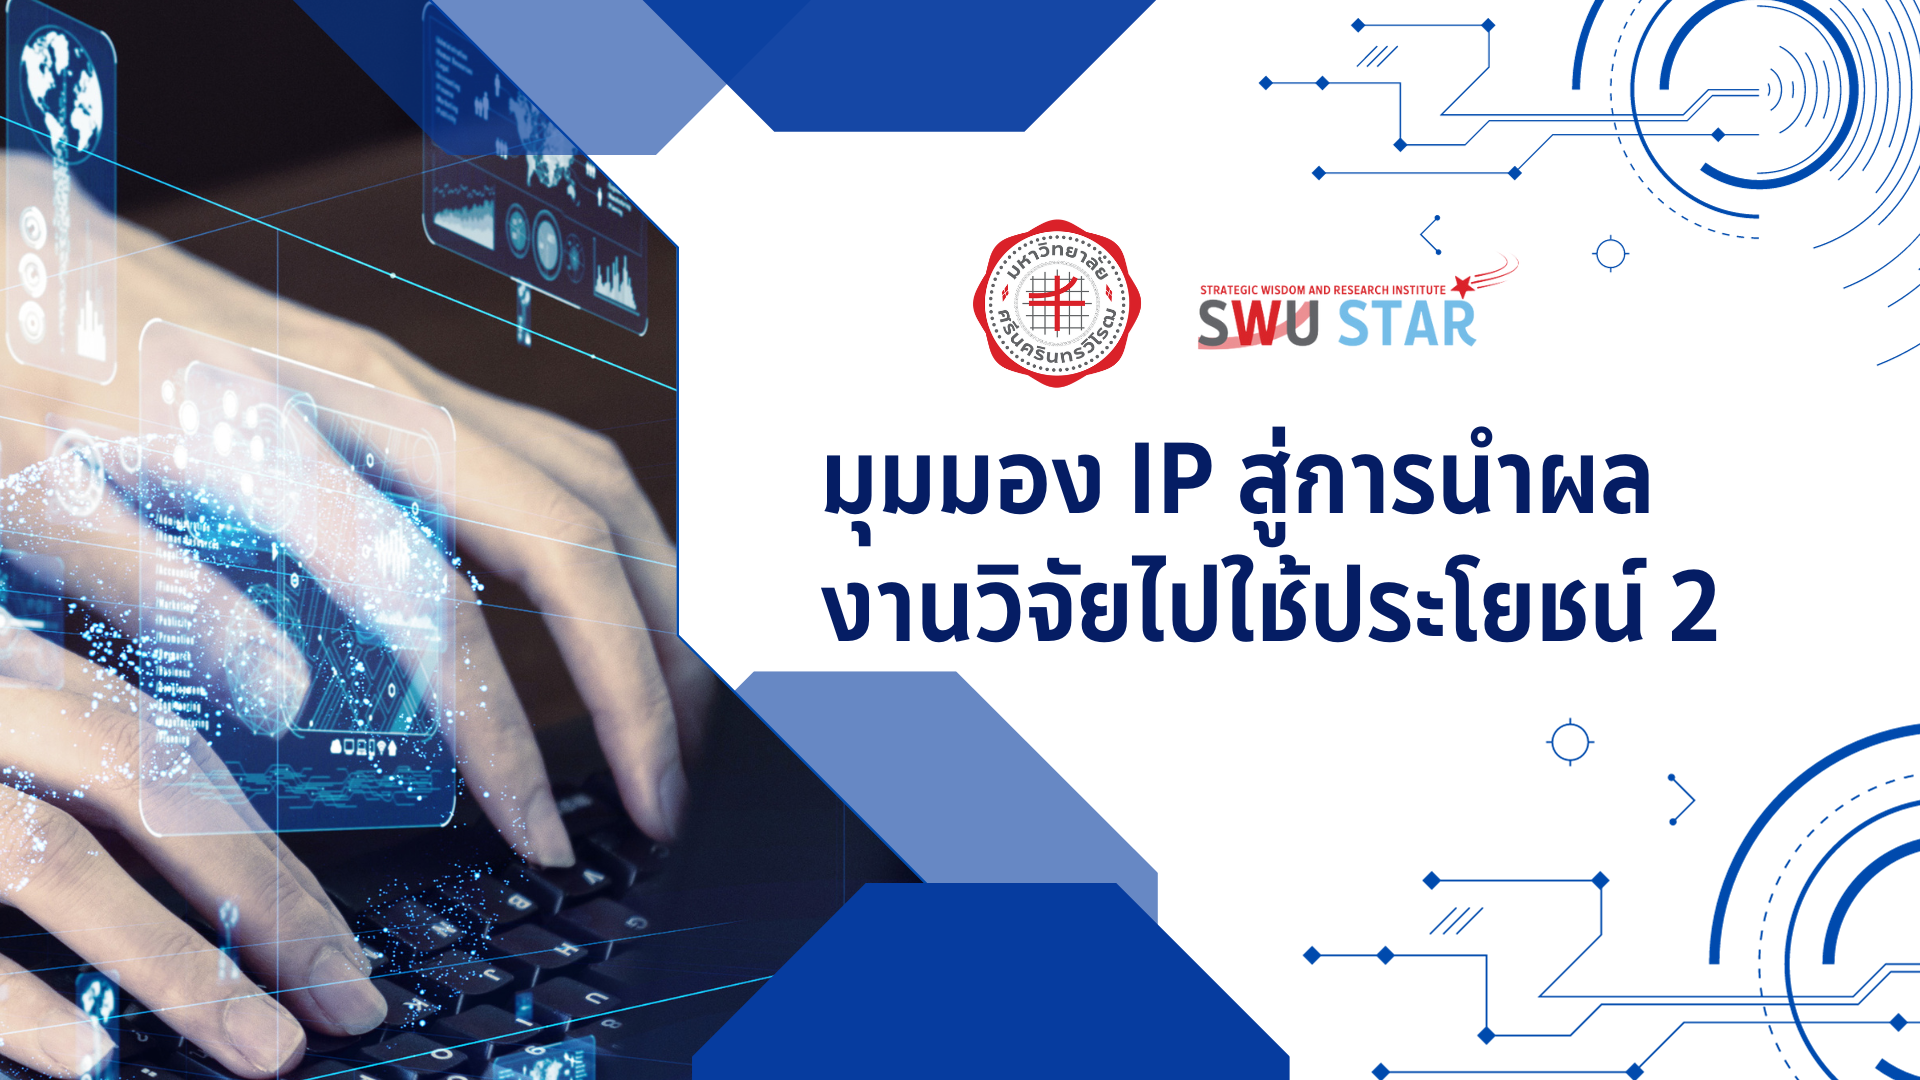 SWU STAR: มุมมอง IP สู่การนำผลงานวิจัยไปใช้ประโยชน์ 2